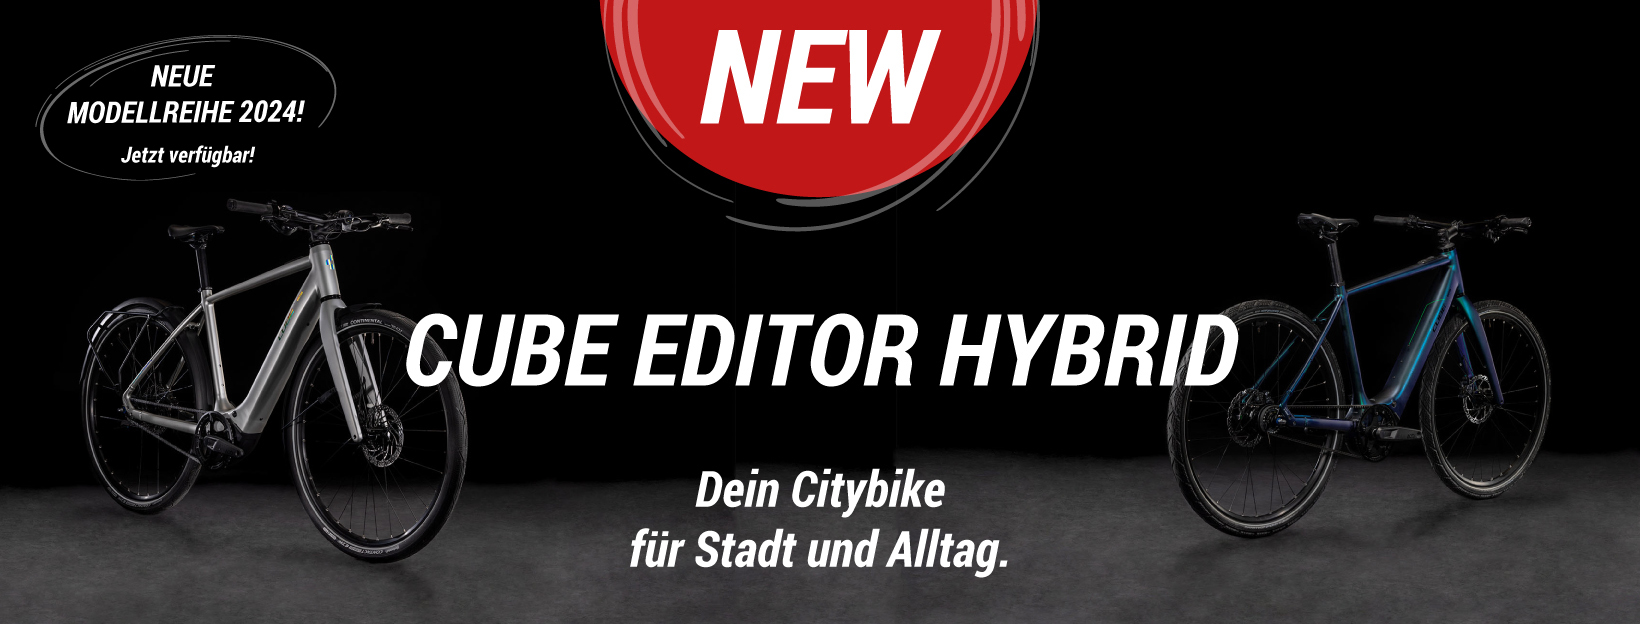 CUBE Editor Hybrid im BIKE Market bestellen